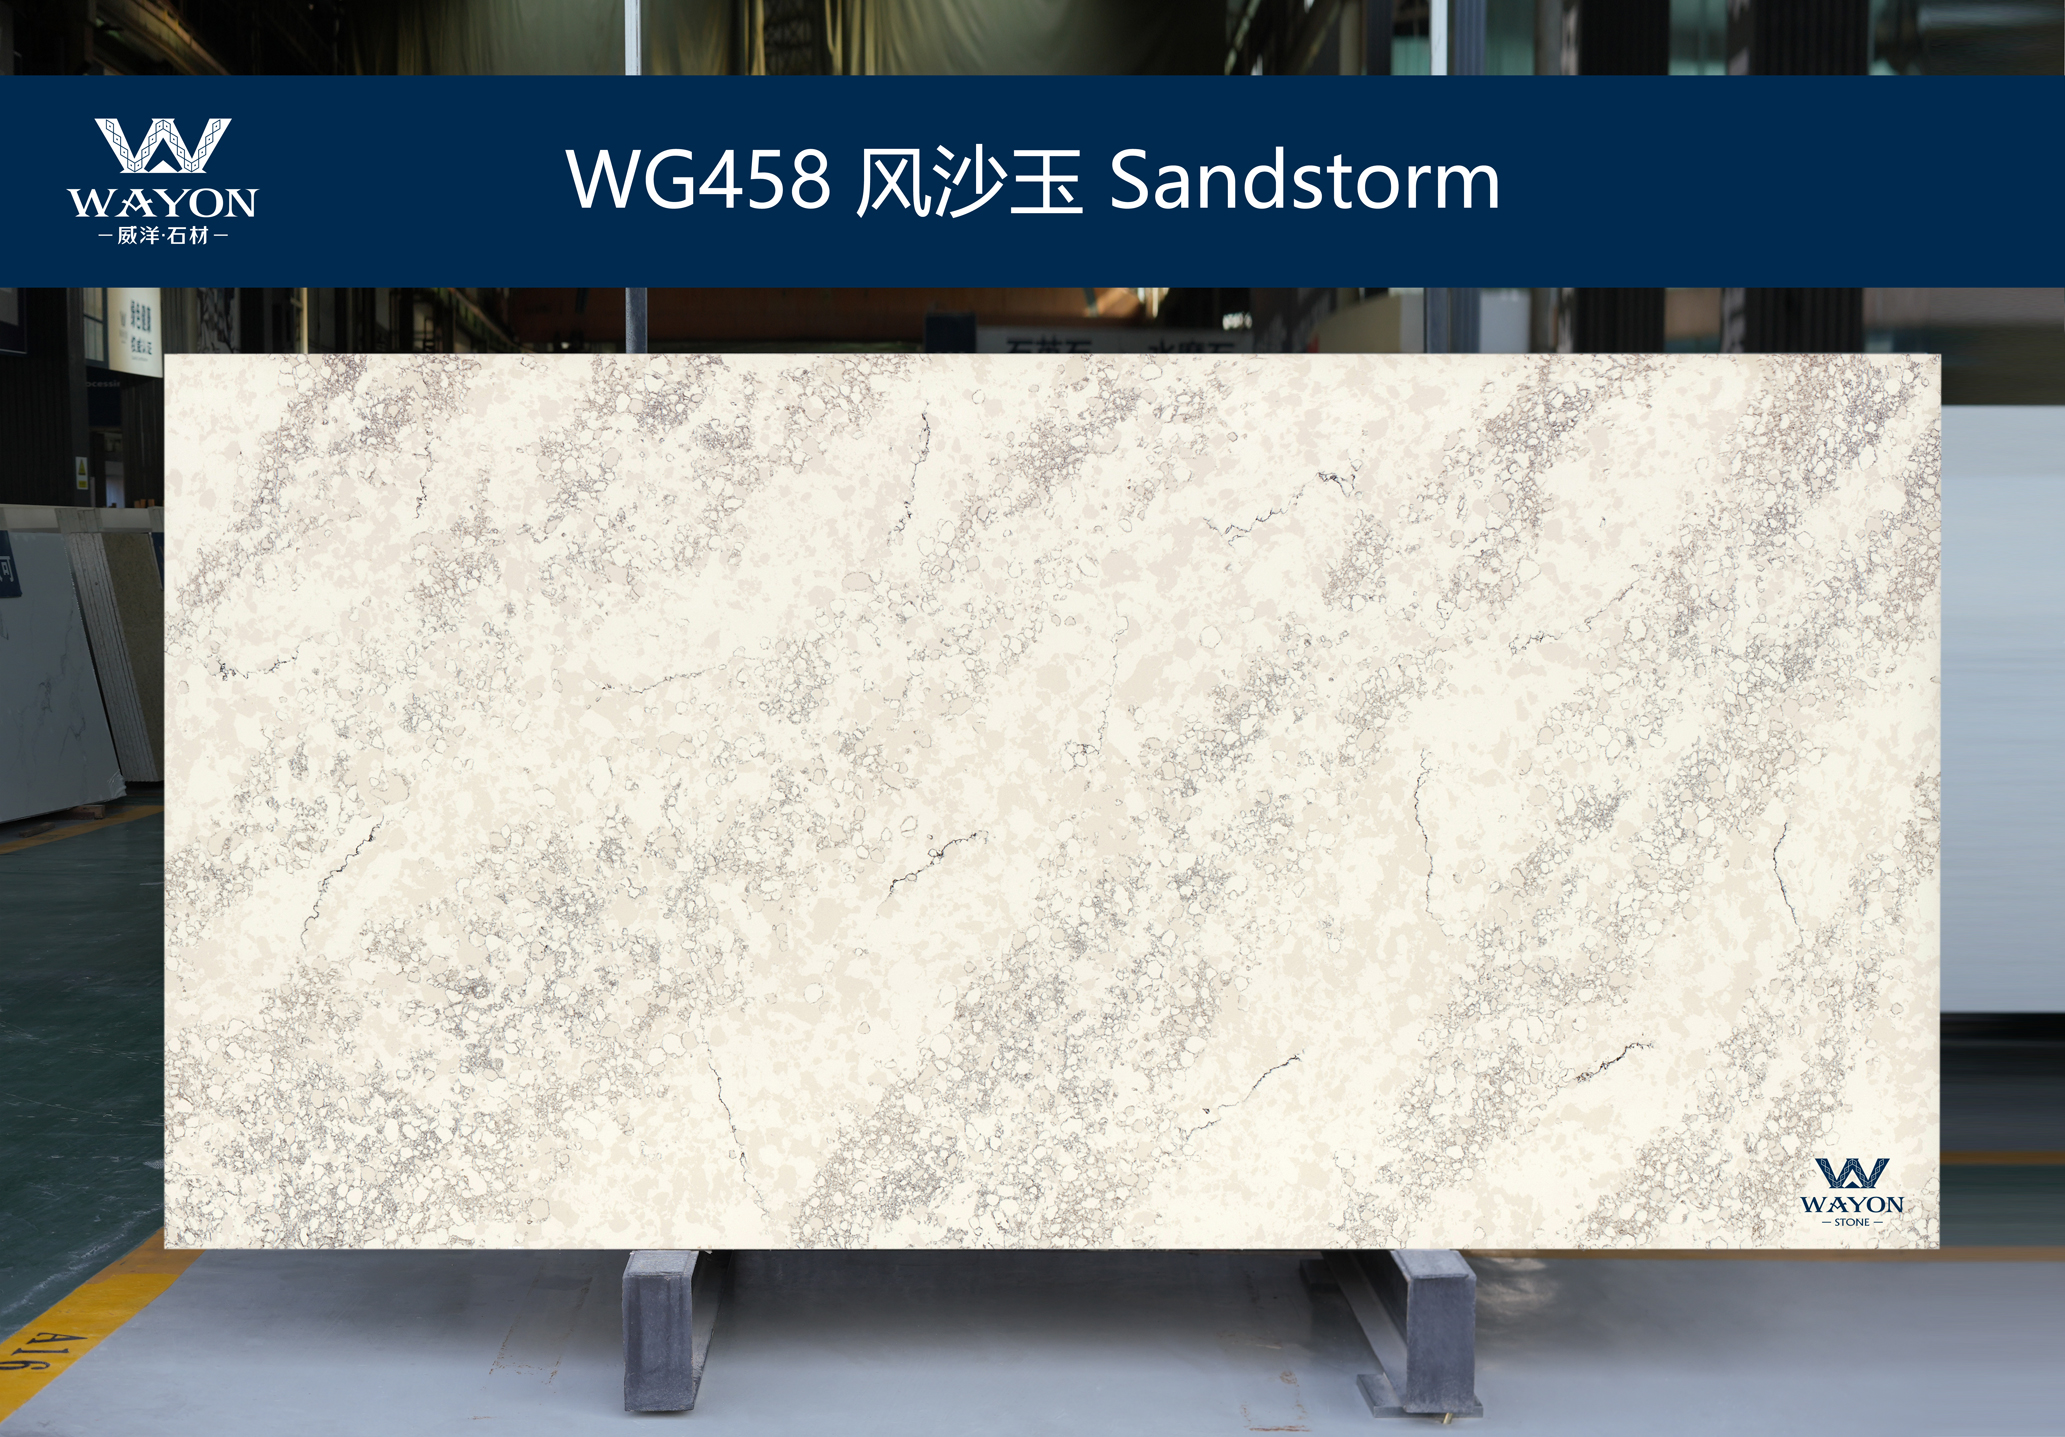 WG458 Sandstorm